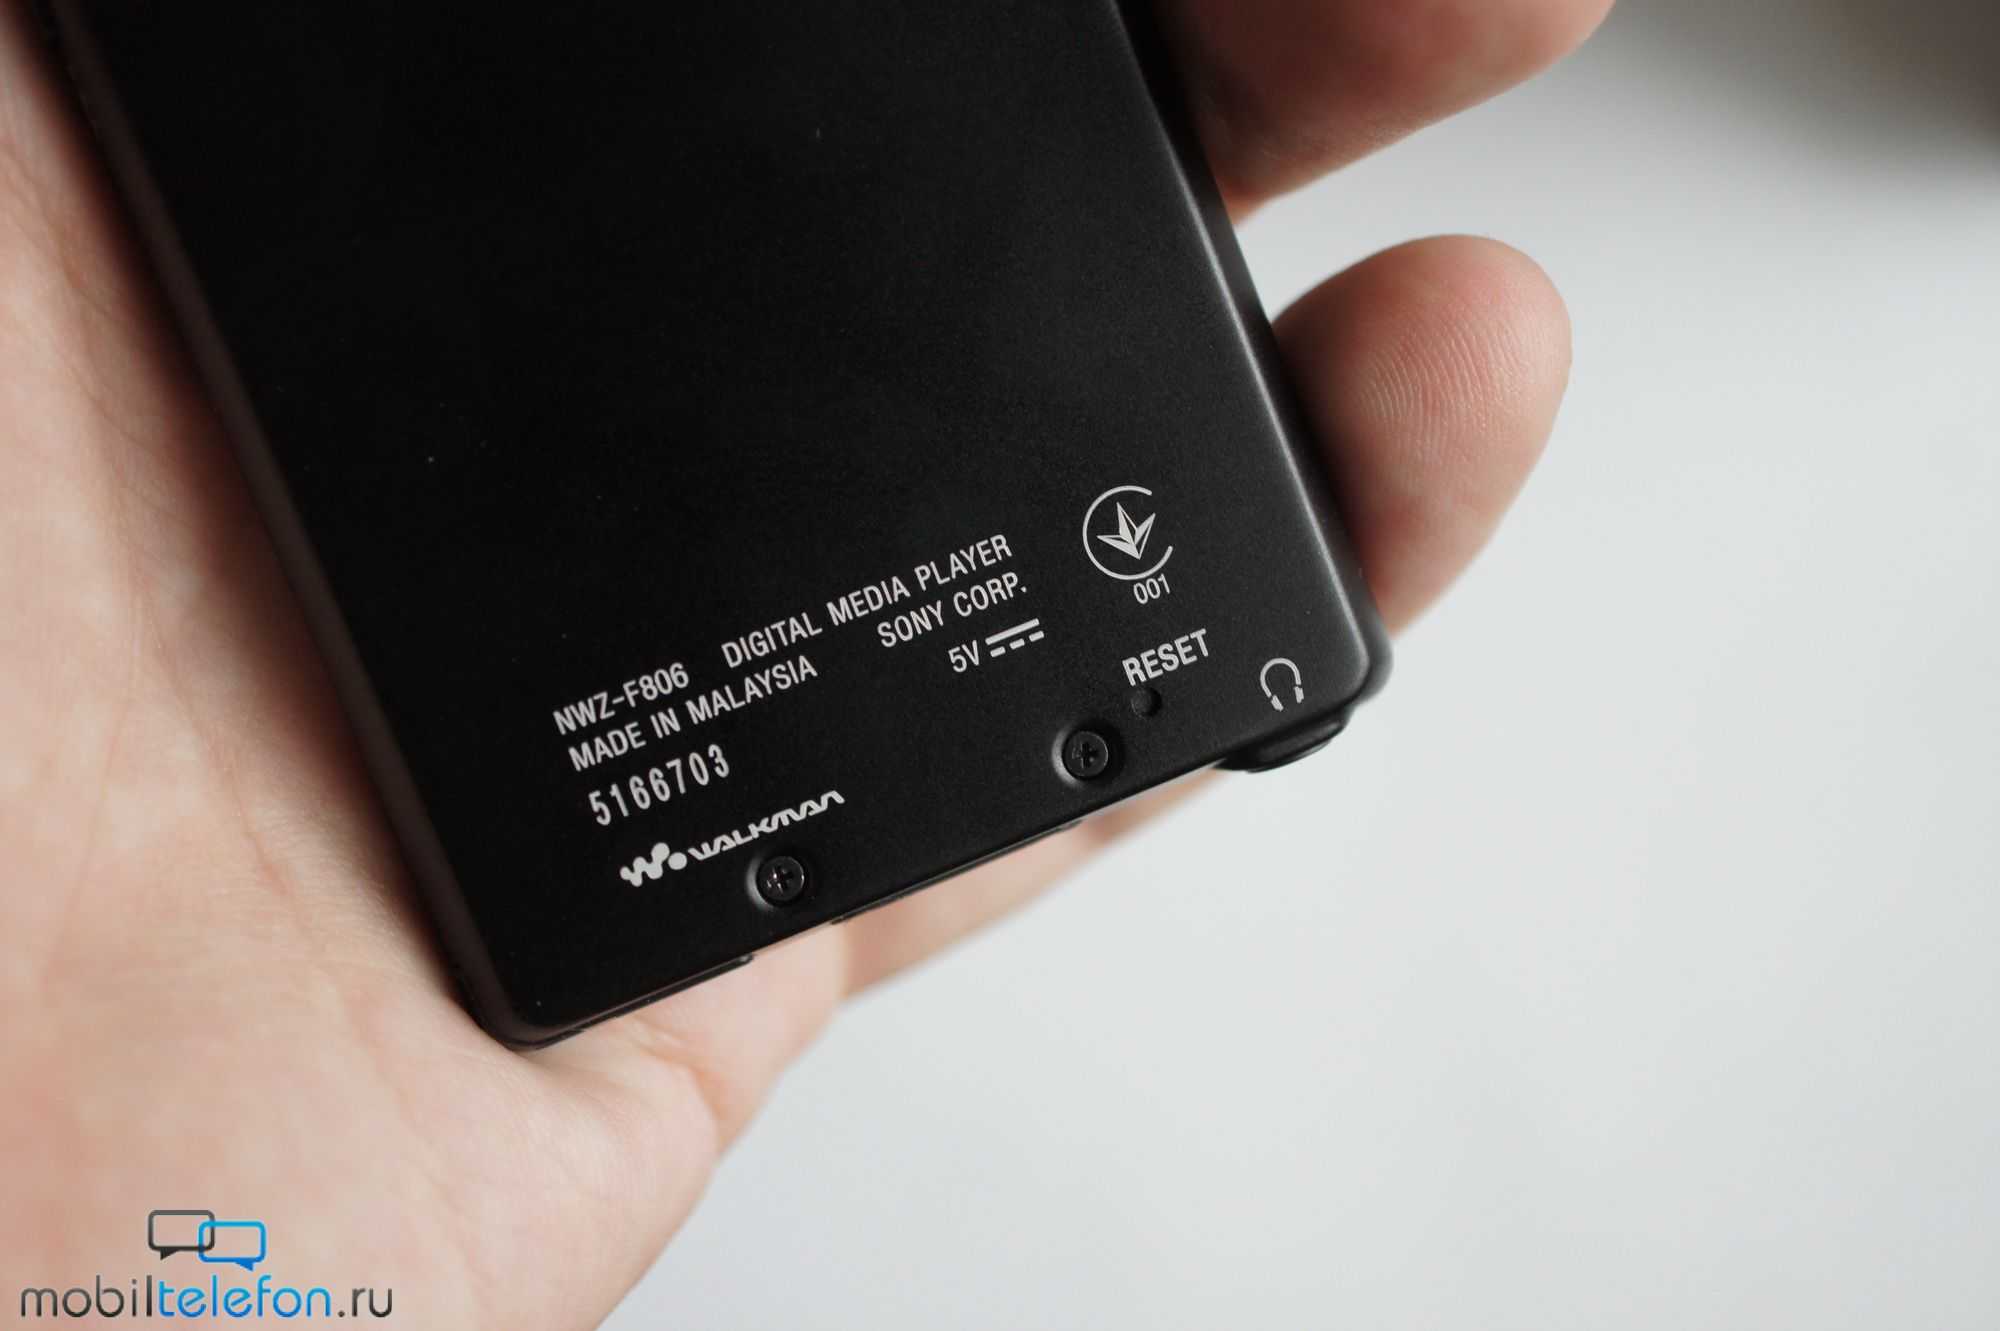 Sony nwz-f806 купить по акционной цене , отзывы и обзоры.